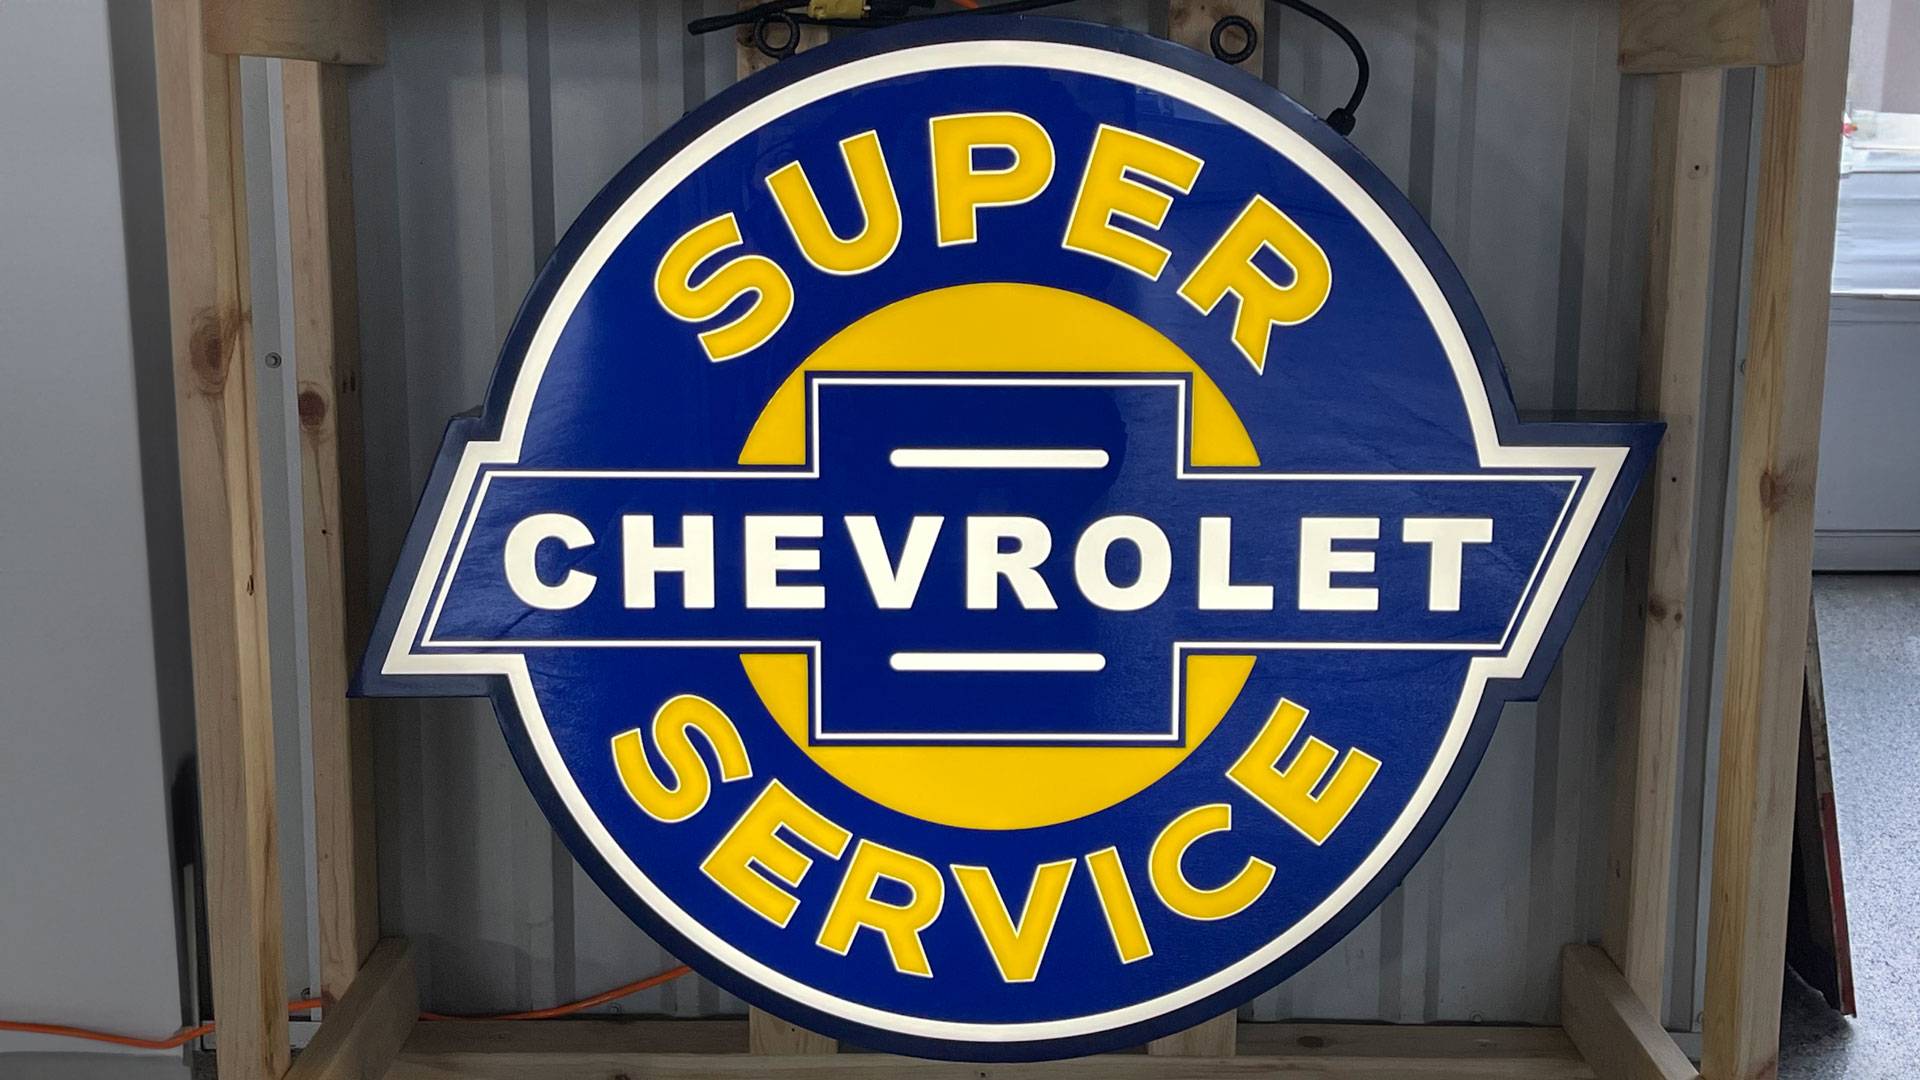 Super Chevrolet Service Round